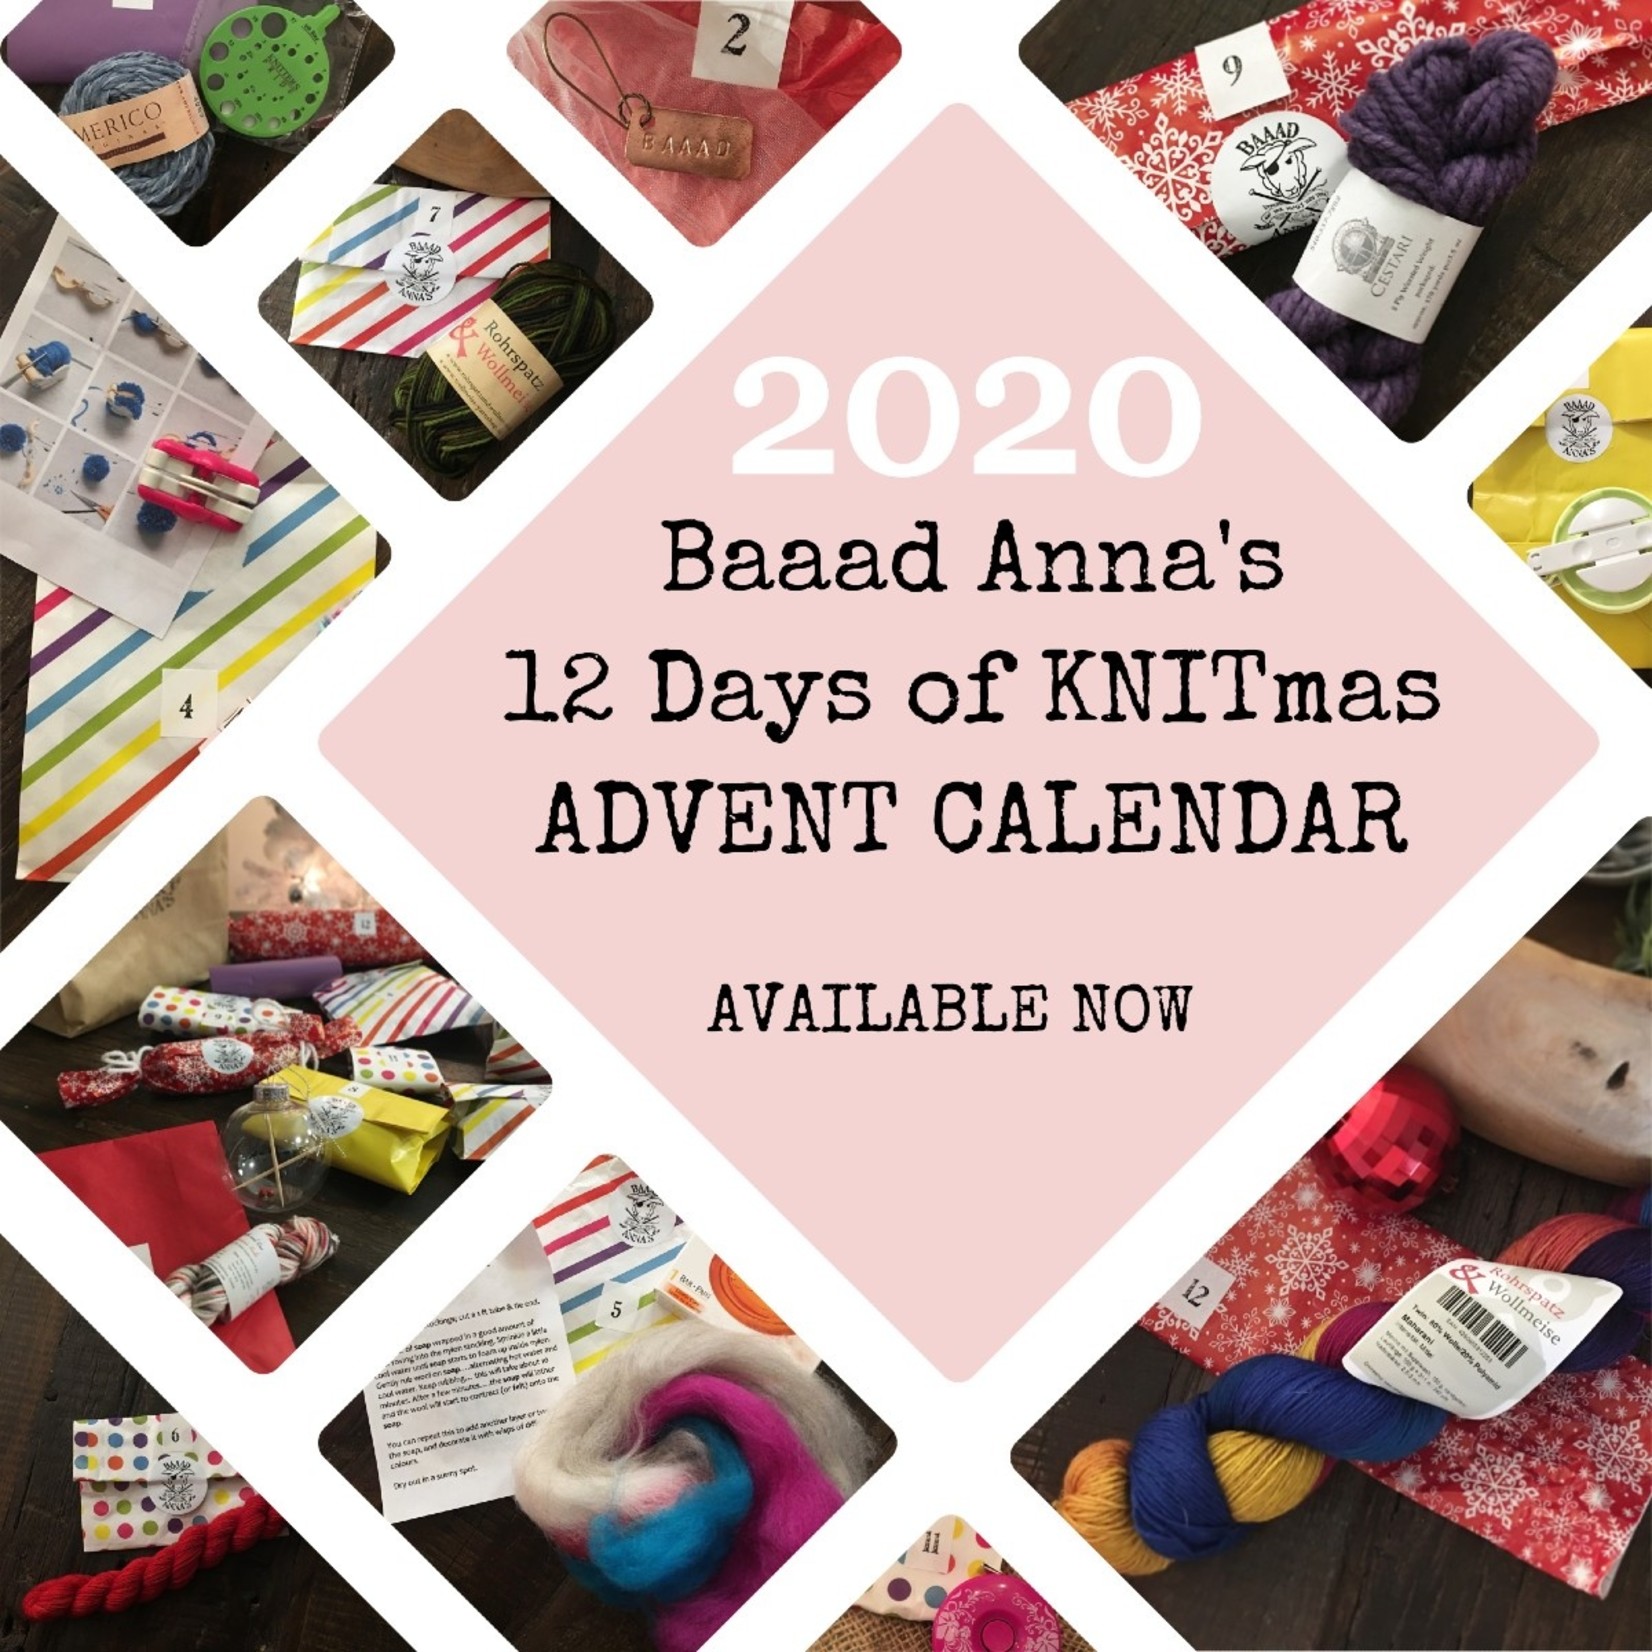 Baaad Anna's 12 Days of Knitmas 2020